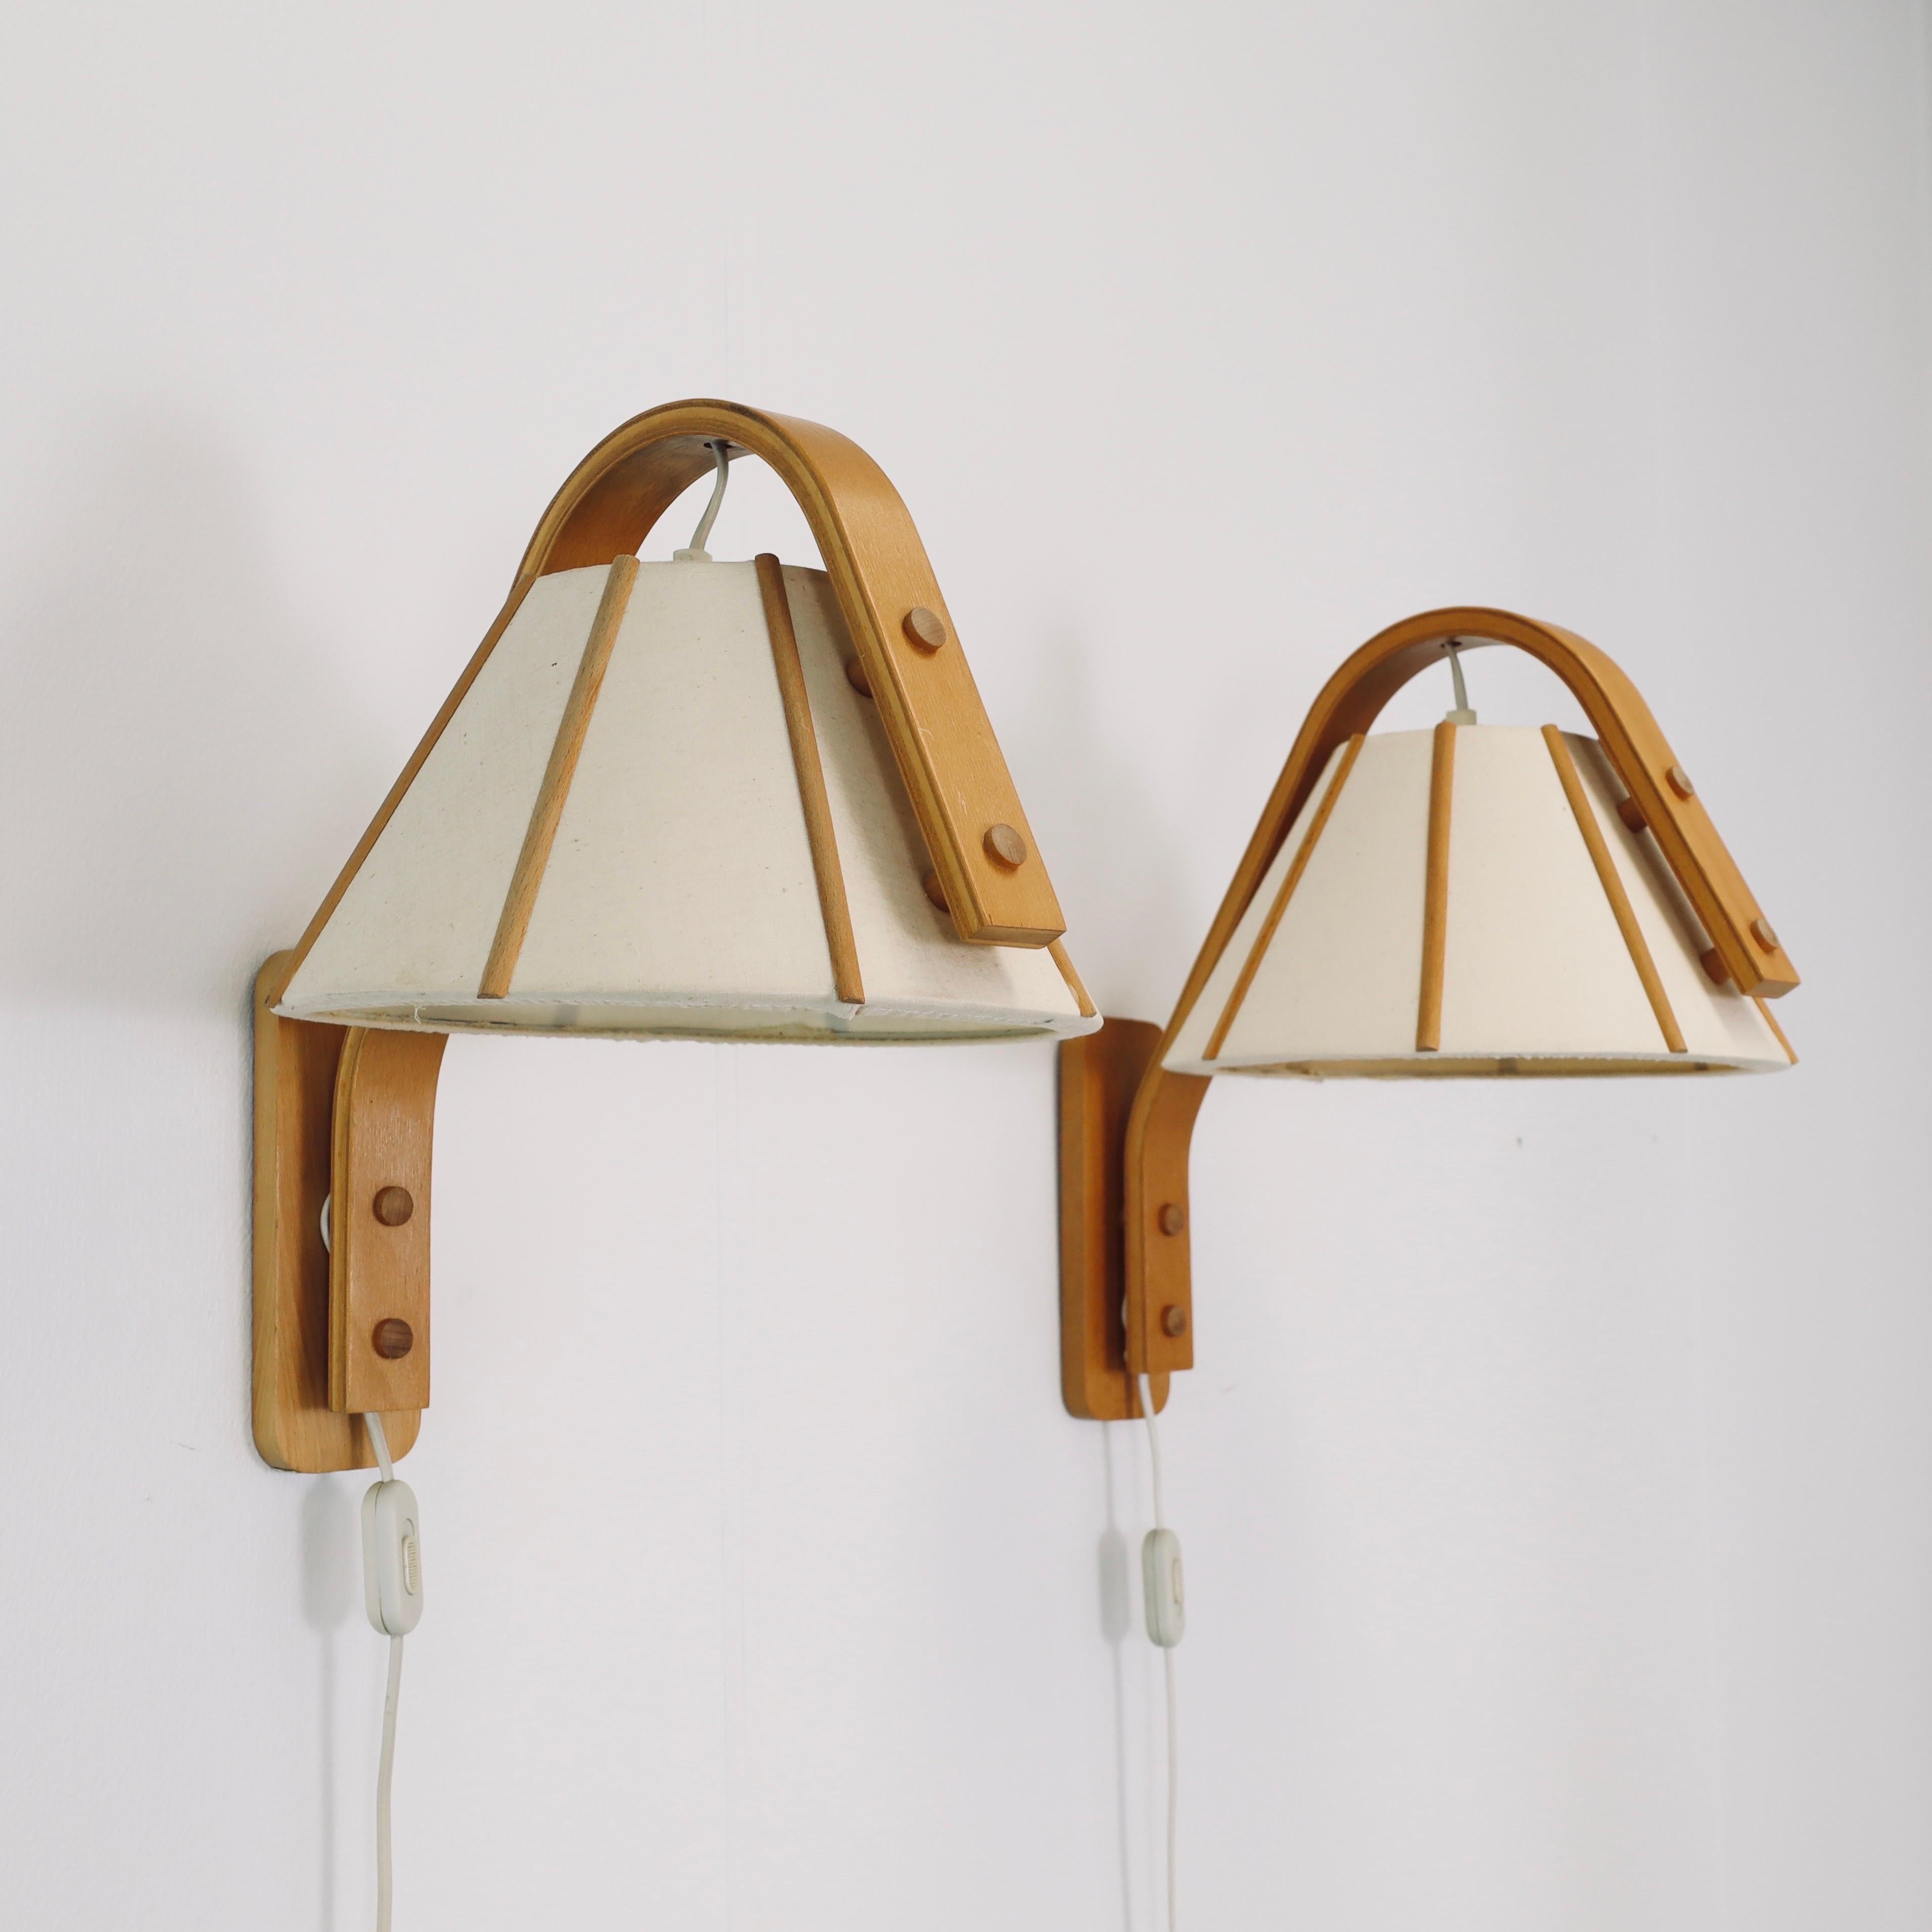 Fabric Scandinavian Modern Beech wood wall lamps by Jan Wickelgren, 1970s, Sweden  For Sale